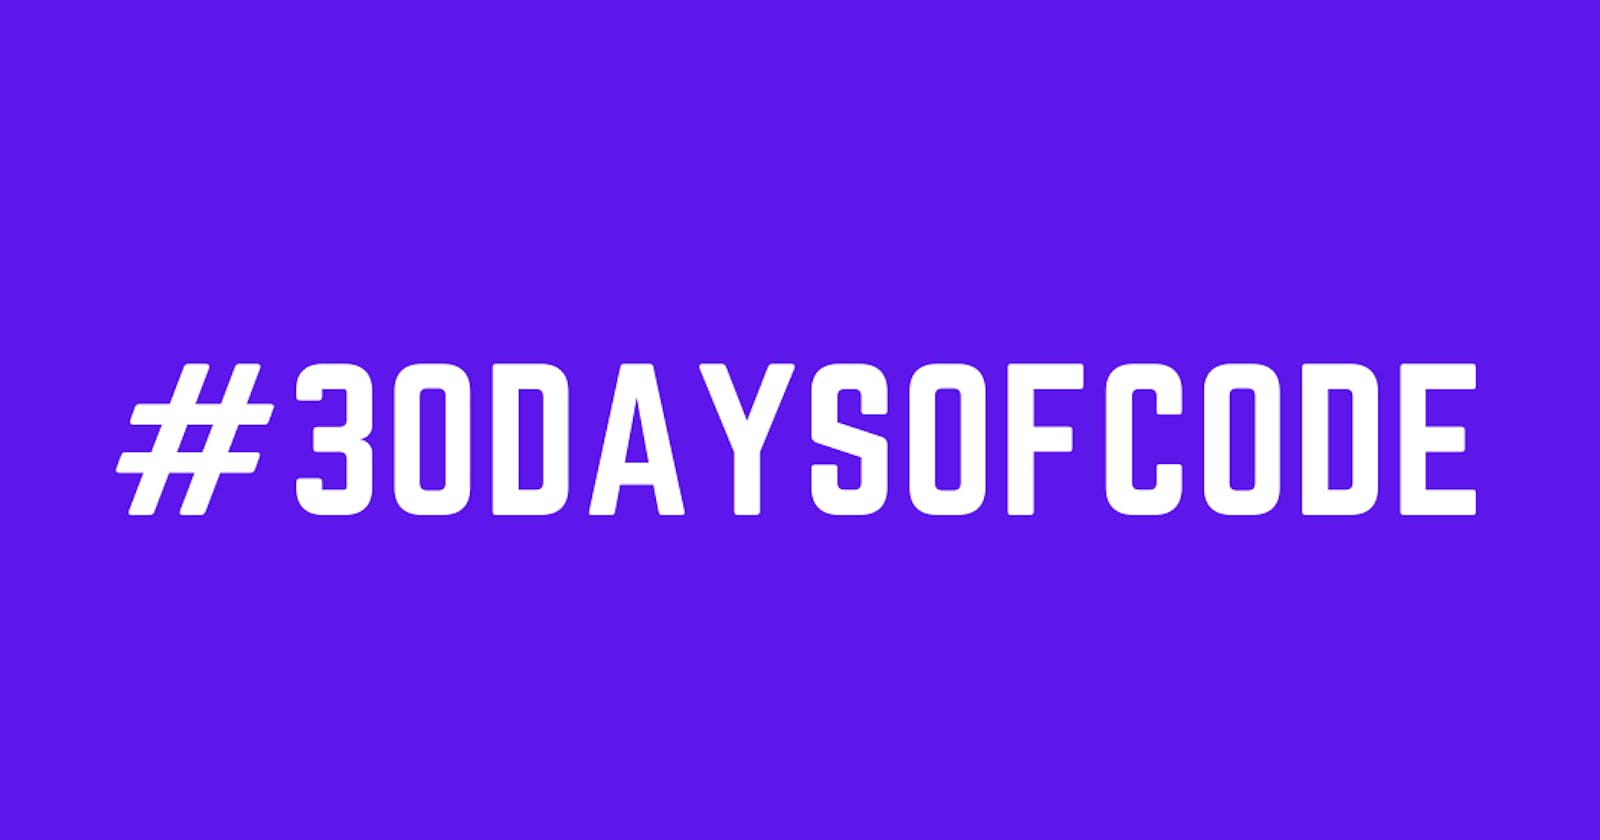 #30DaysofCode